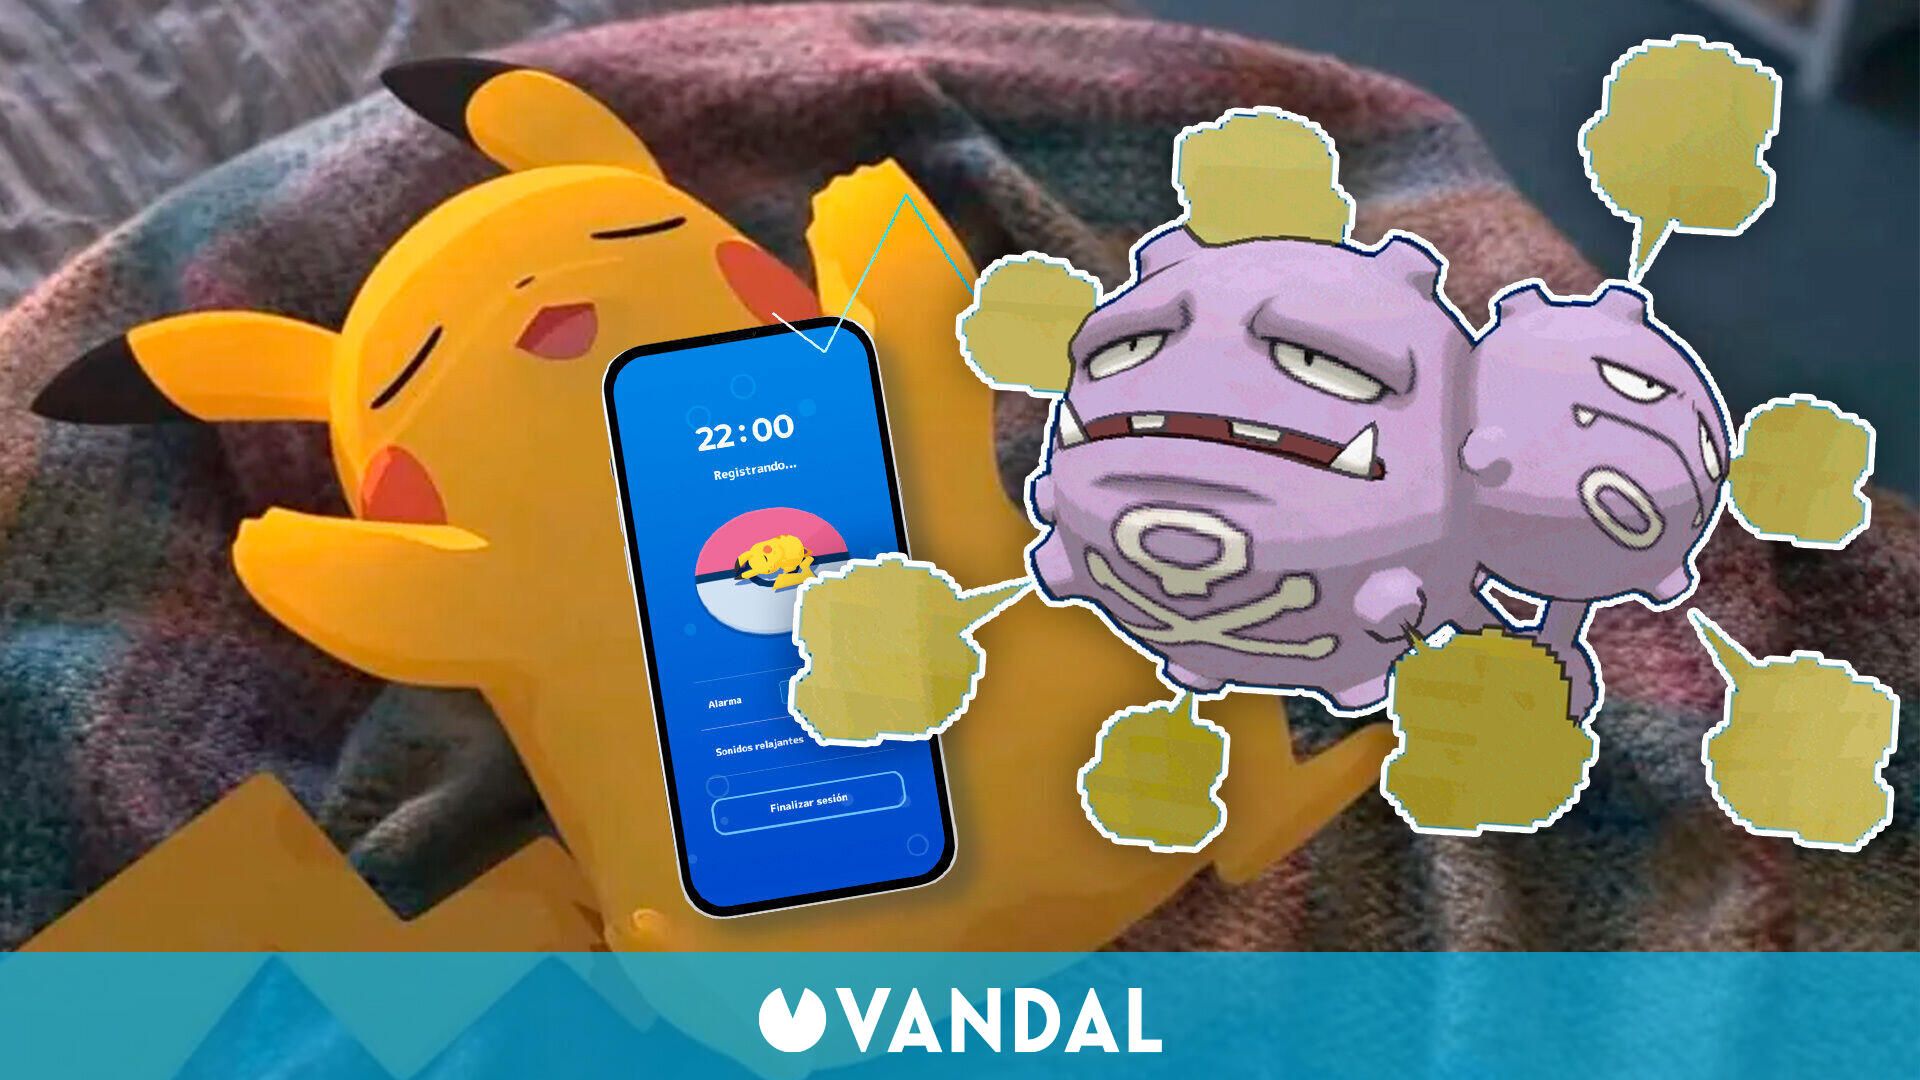 Pokémon Sleep registra i suoni che emettiamo mentre dormiamo, inclusi grugniti e scoregge